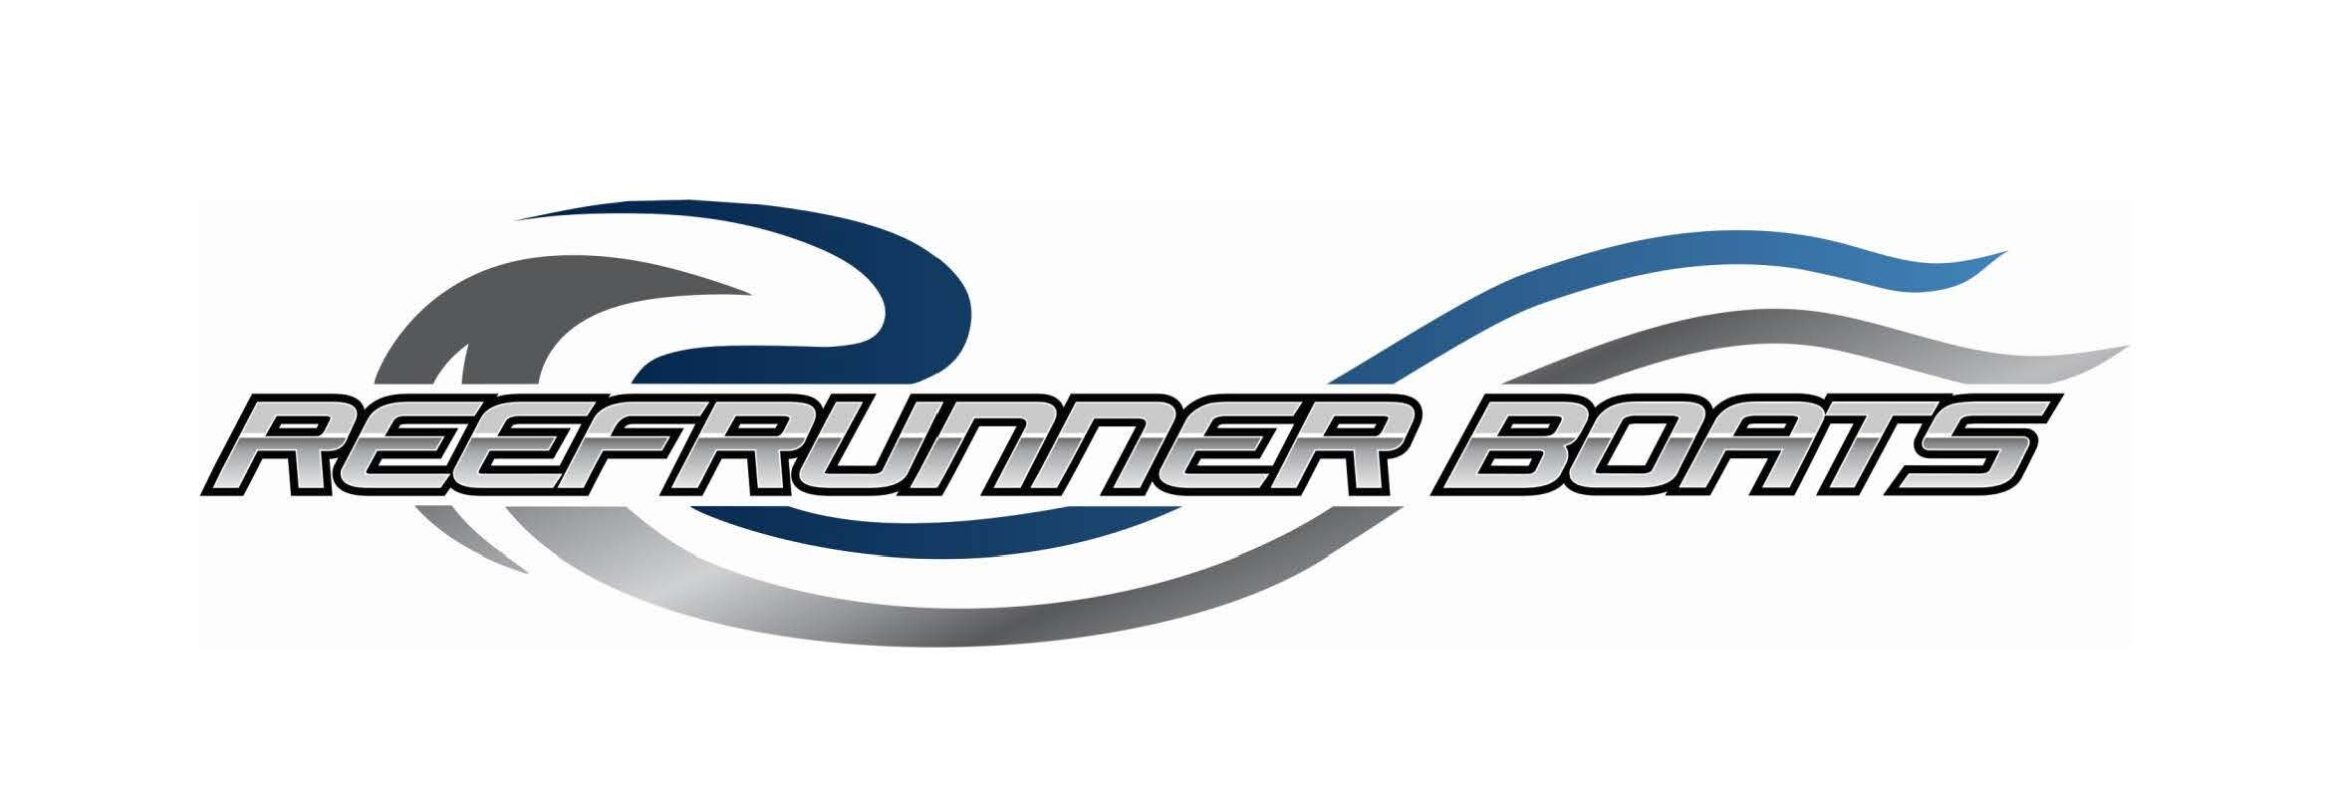 Reefrunner Logo